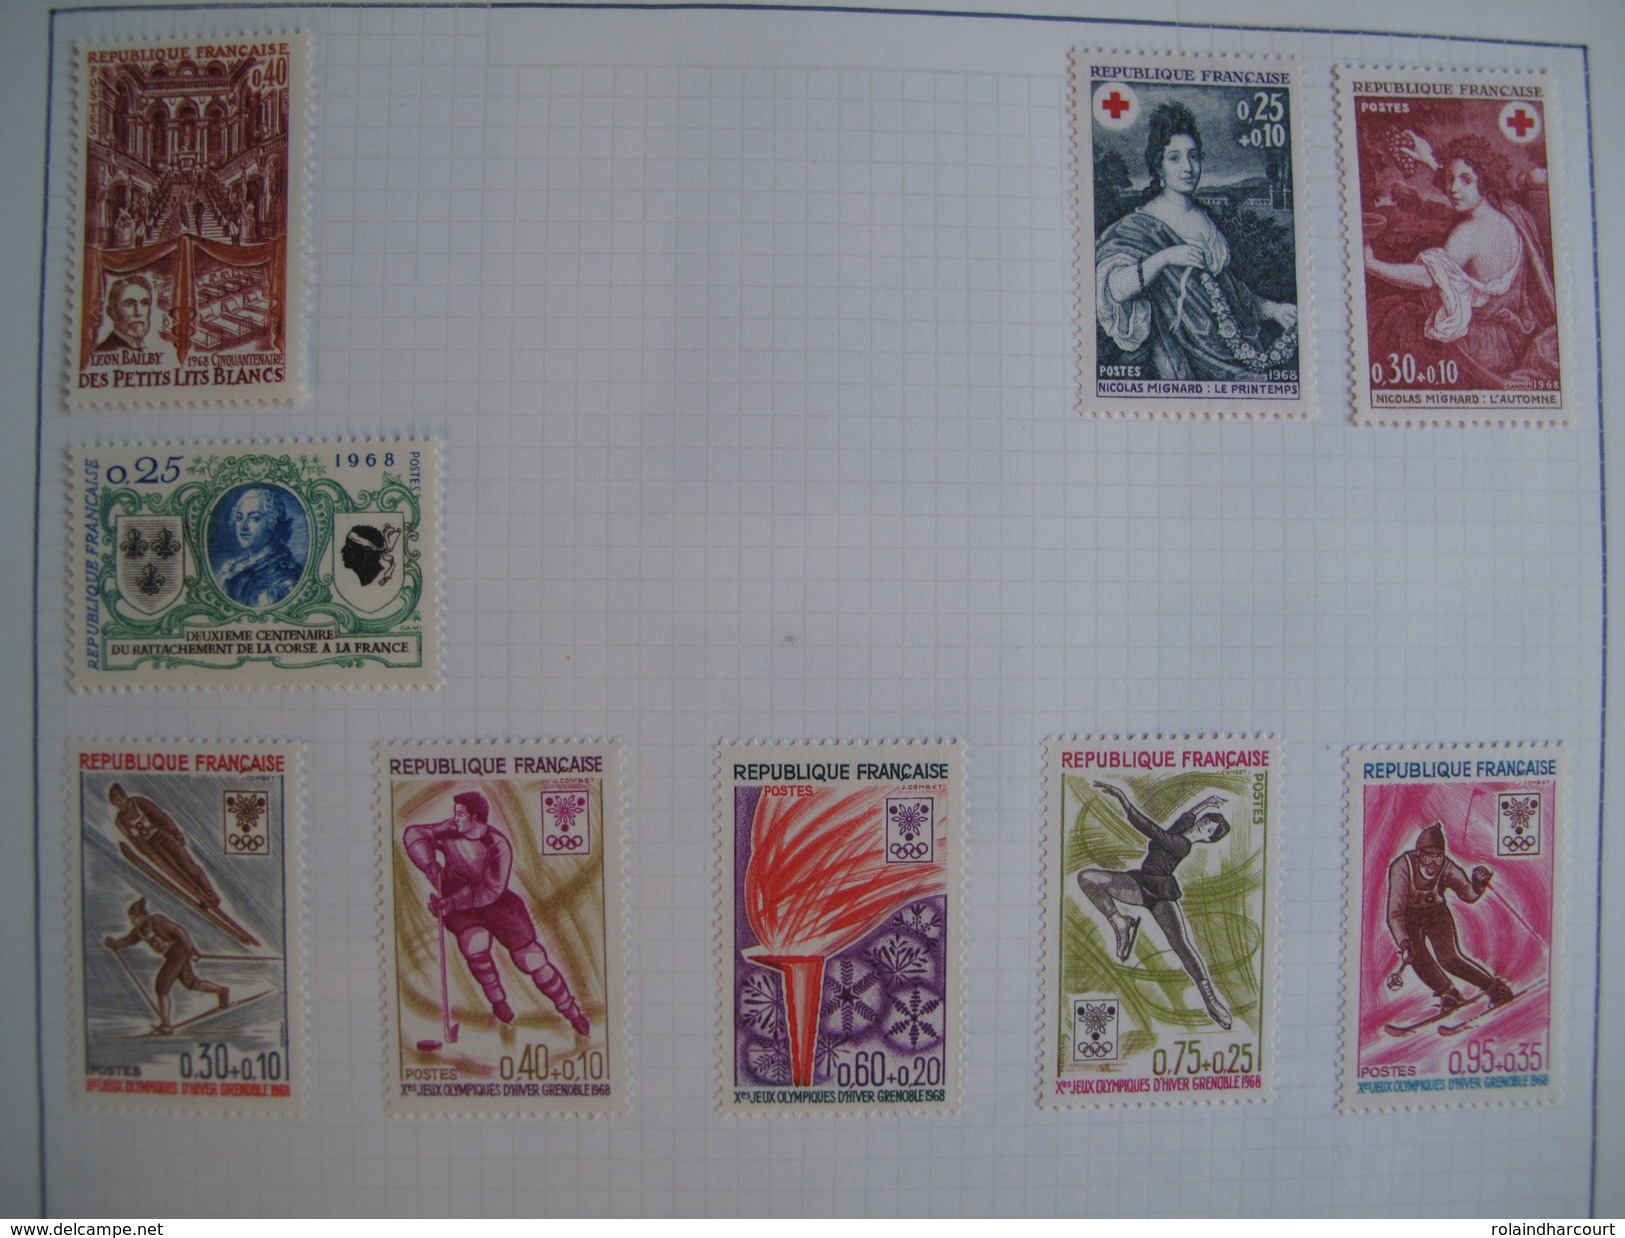 LOT VL4380/11 - 1959/2000 - Plus de 1750 timbres neufs* et oblitérés dans un ALBUM (mini-charnières) - FORTE COTE +++